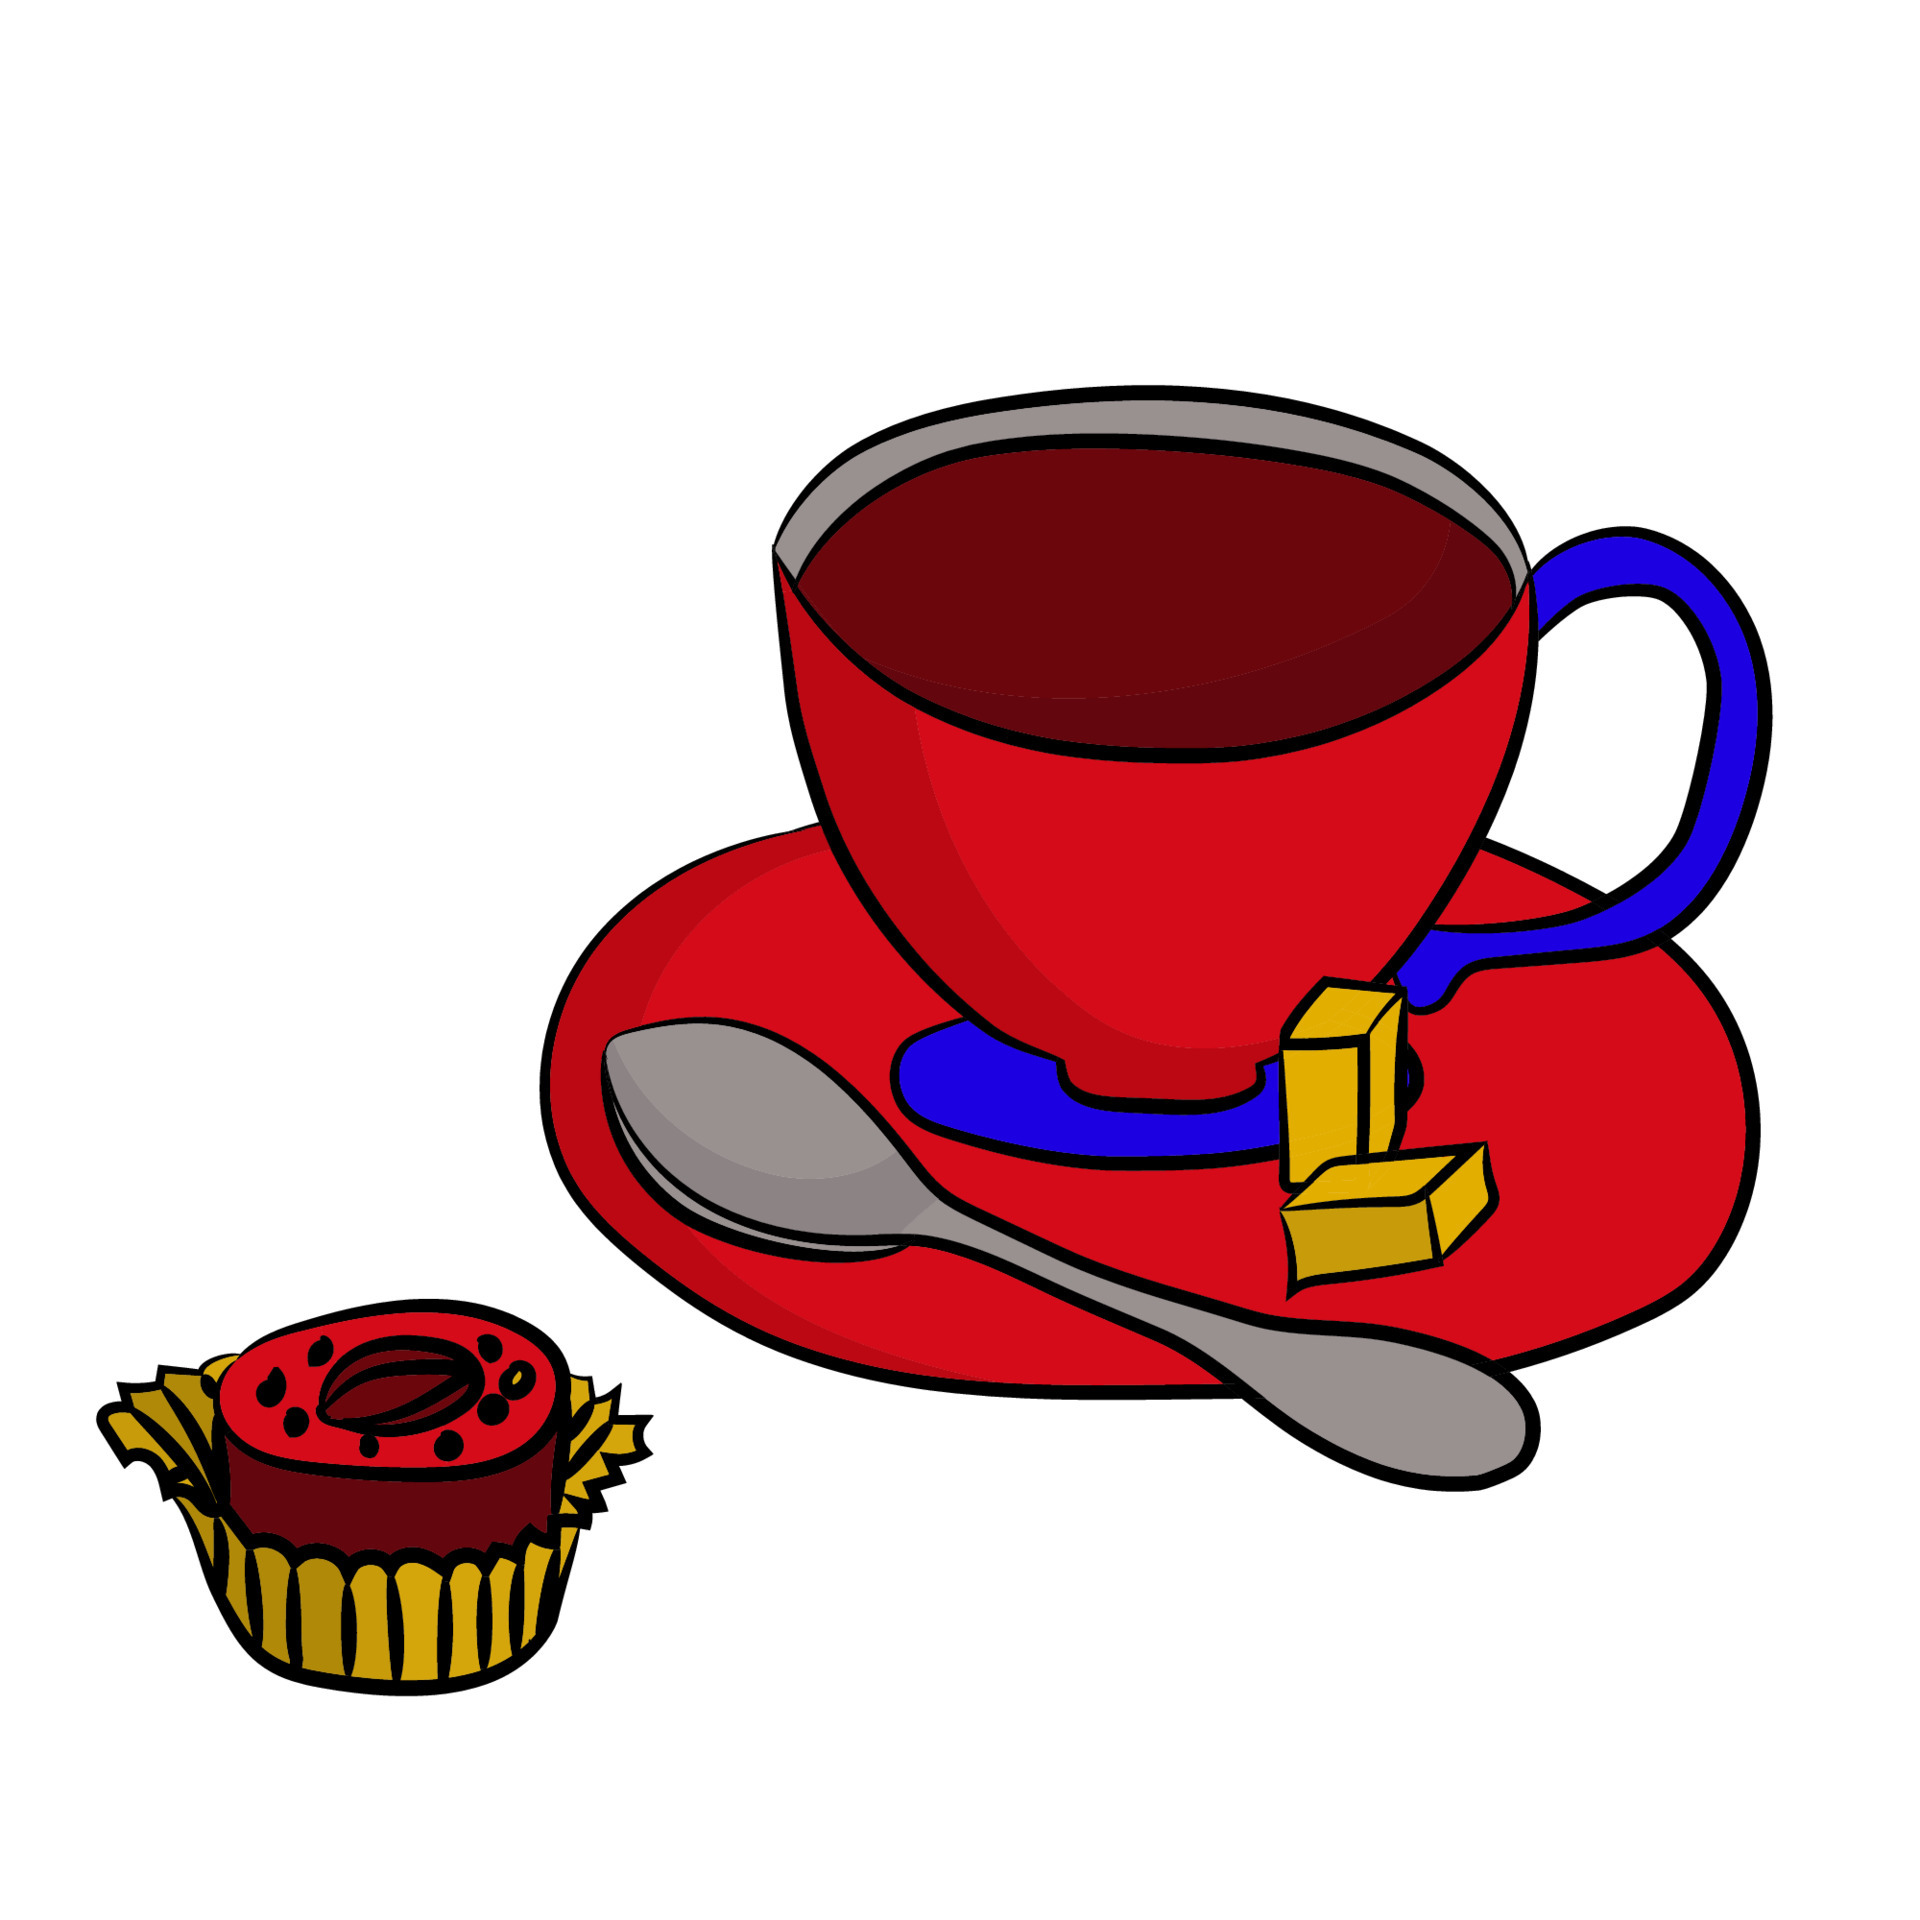 Bewustzijn Aan het water gijzelaar kopje thee op een schotel met een theelepel suiker en plakjes. snoep in een  wikkel met een noot in het midden. geïsoleerd op een witte achtergrond.  5898171 - Download Free Vectors, Vector